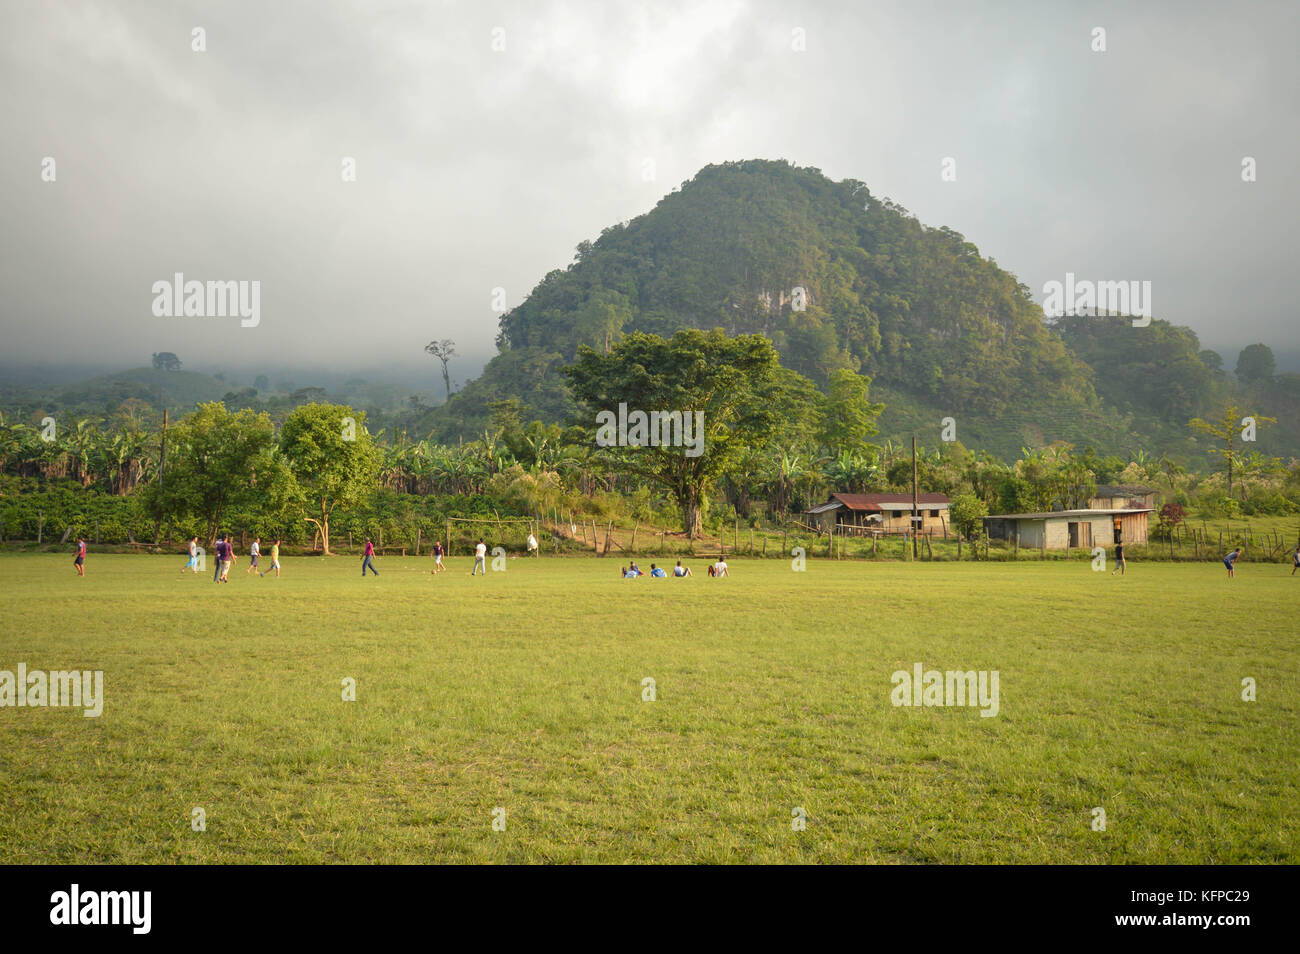 Fußballplatz und den nebligen Bergen Kalkstein Landschaften von Santa Barbara Nationalpark in Honduras. Fußball ist sehr beliebt in Honduras Stockfoto